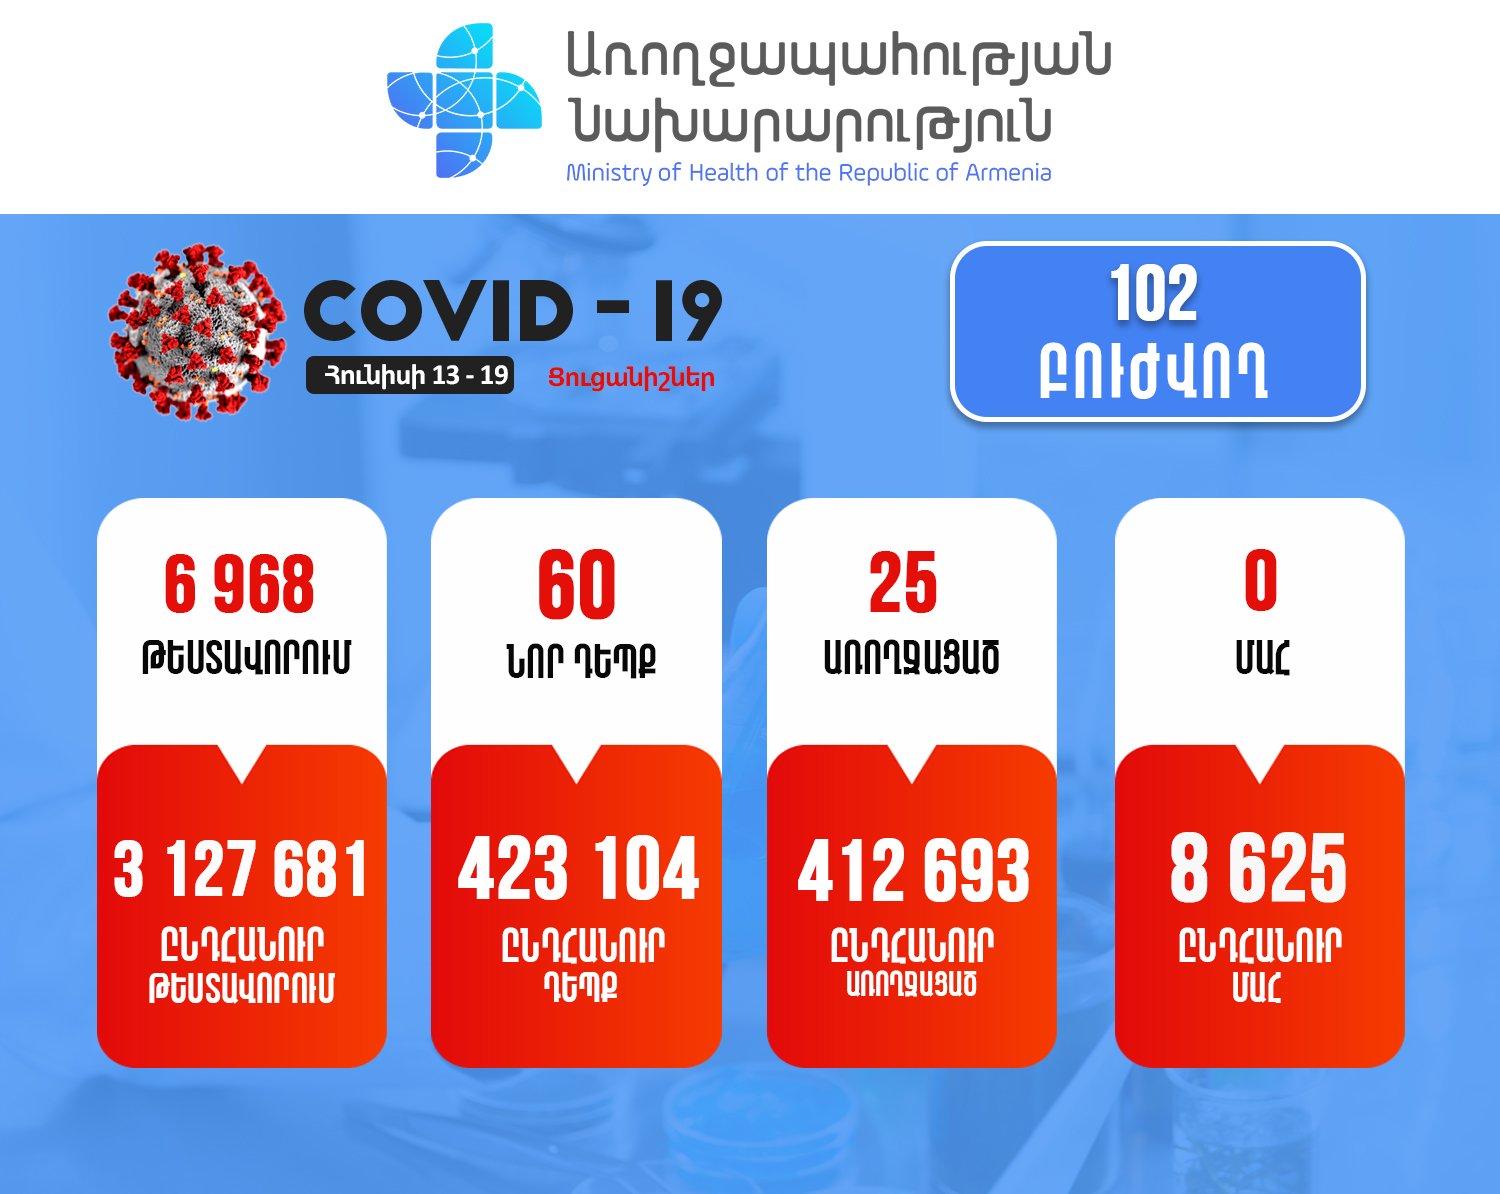 Հայաստանում վերջին մեկ շաբաթում հաստատվել է կորոնավիրուսի 60 նոր դեպք